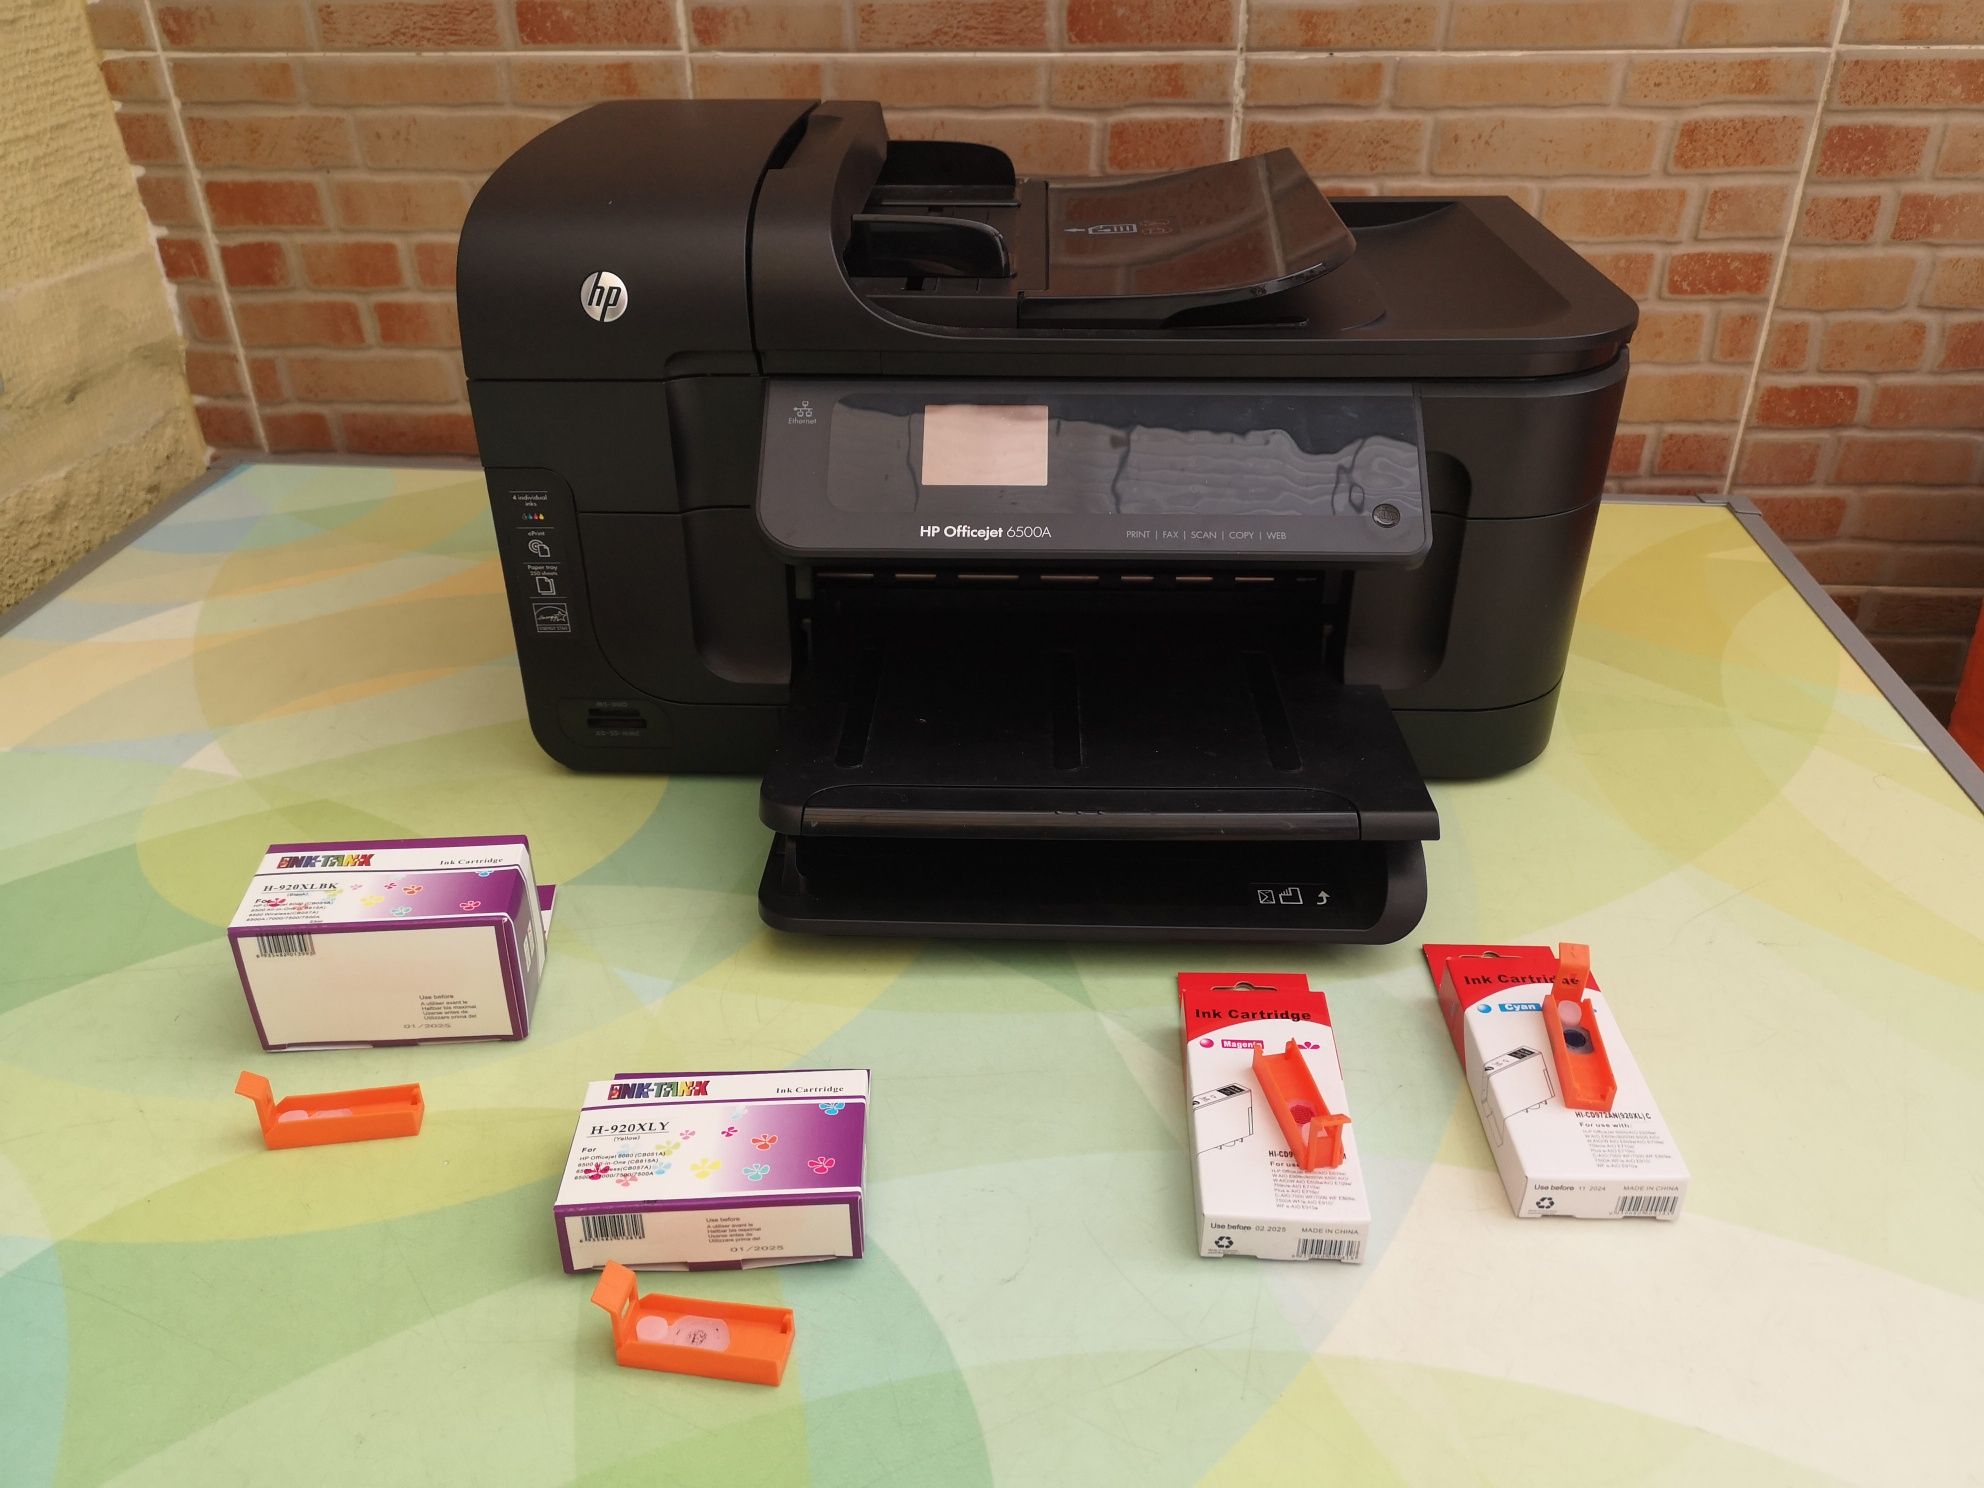 Impressora Hp Officejet 6500A avariada, com tinteiros novos